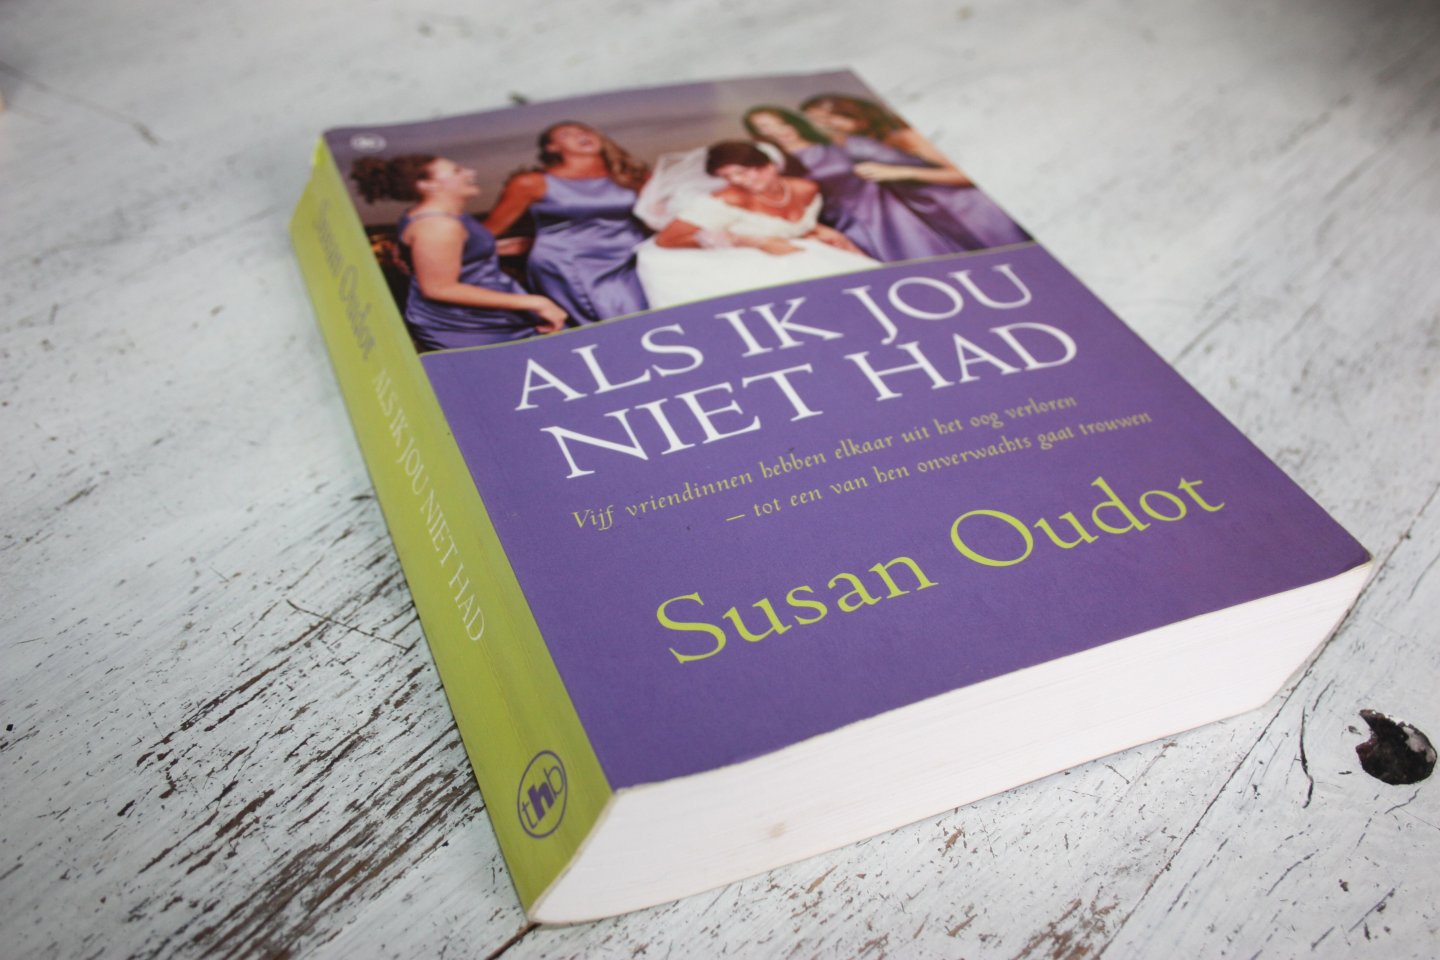 Oudot, Susan - ALS IK JOU NIET HAD.